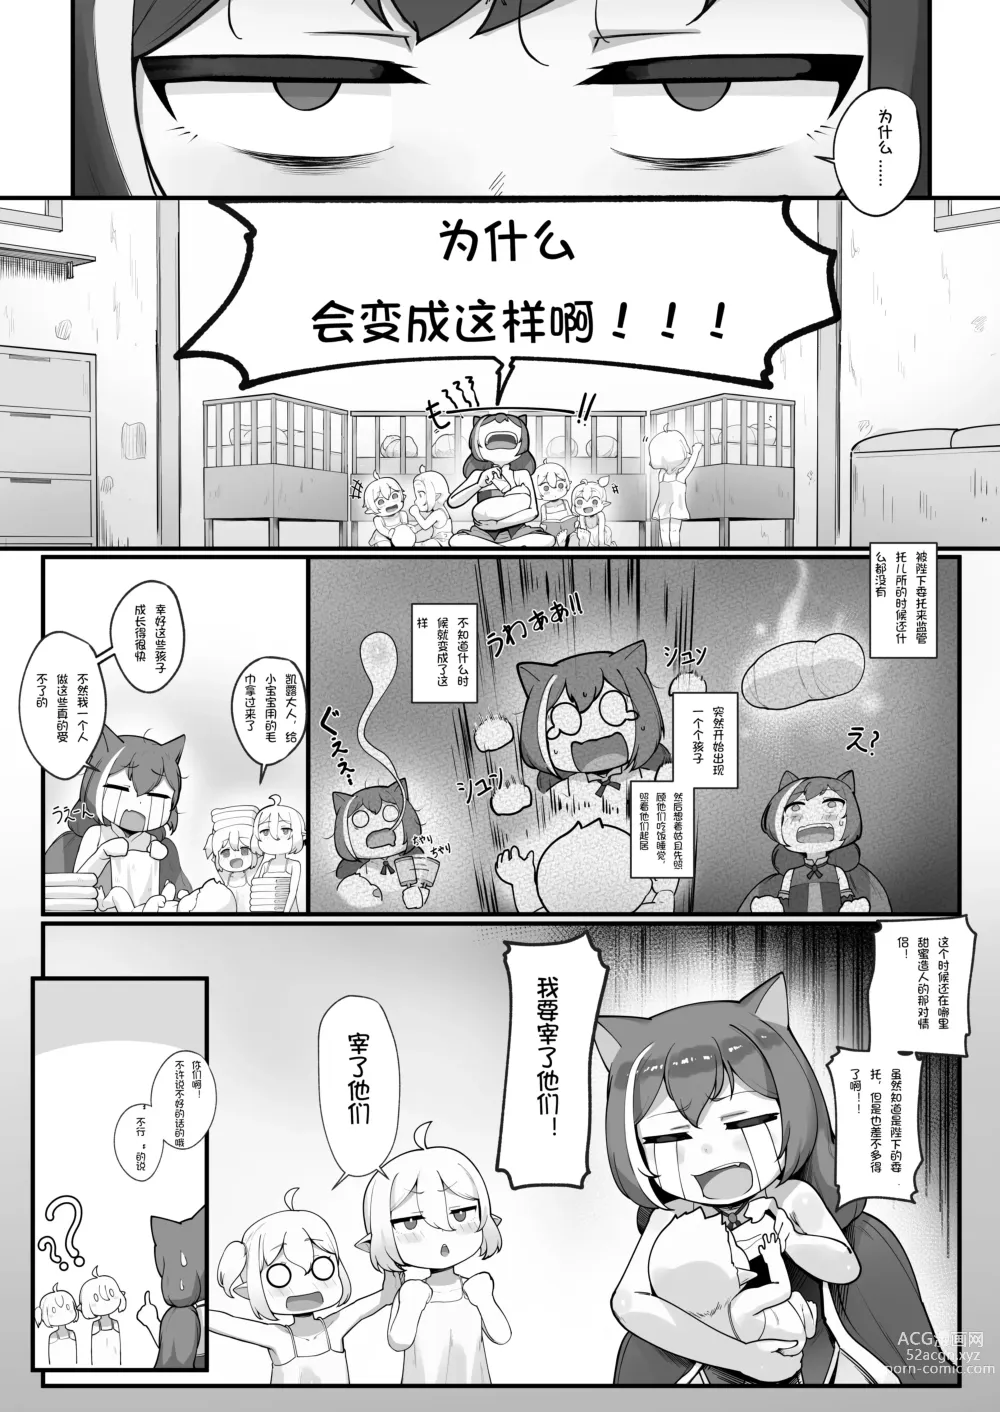 Page 53 of doujinshi Watashi to Aruji-sama no Ninkatsu Nisshi + Omake